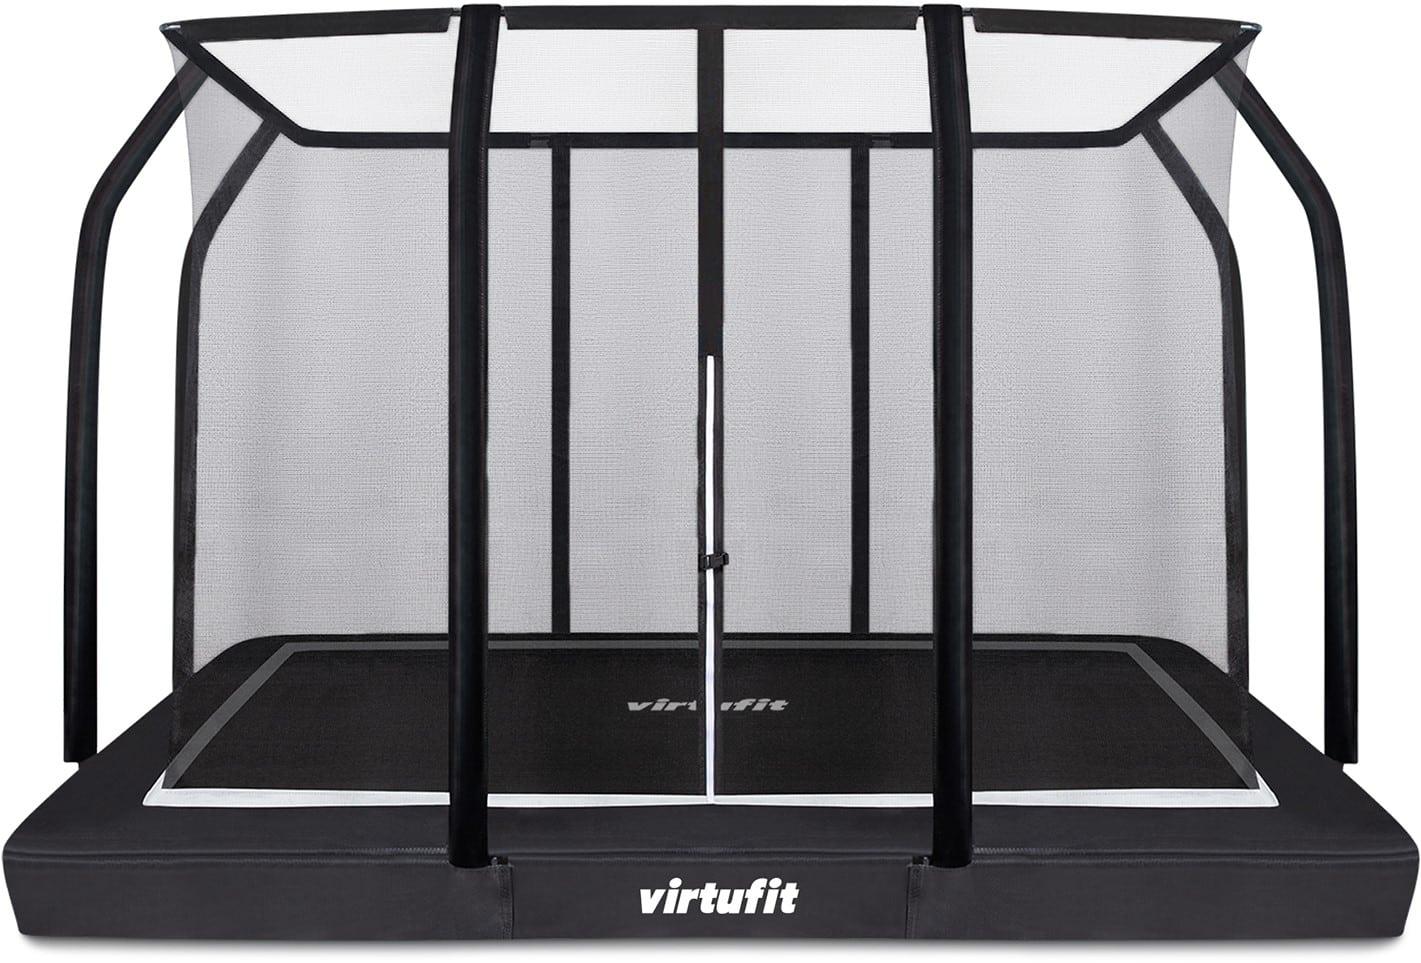 Terugspoelen Mis achter VirtuFit Premium Inground Trampoline met Veiligheidsnet - 244 x 366 cm -  Virtufit